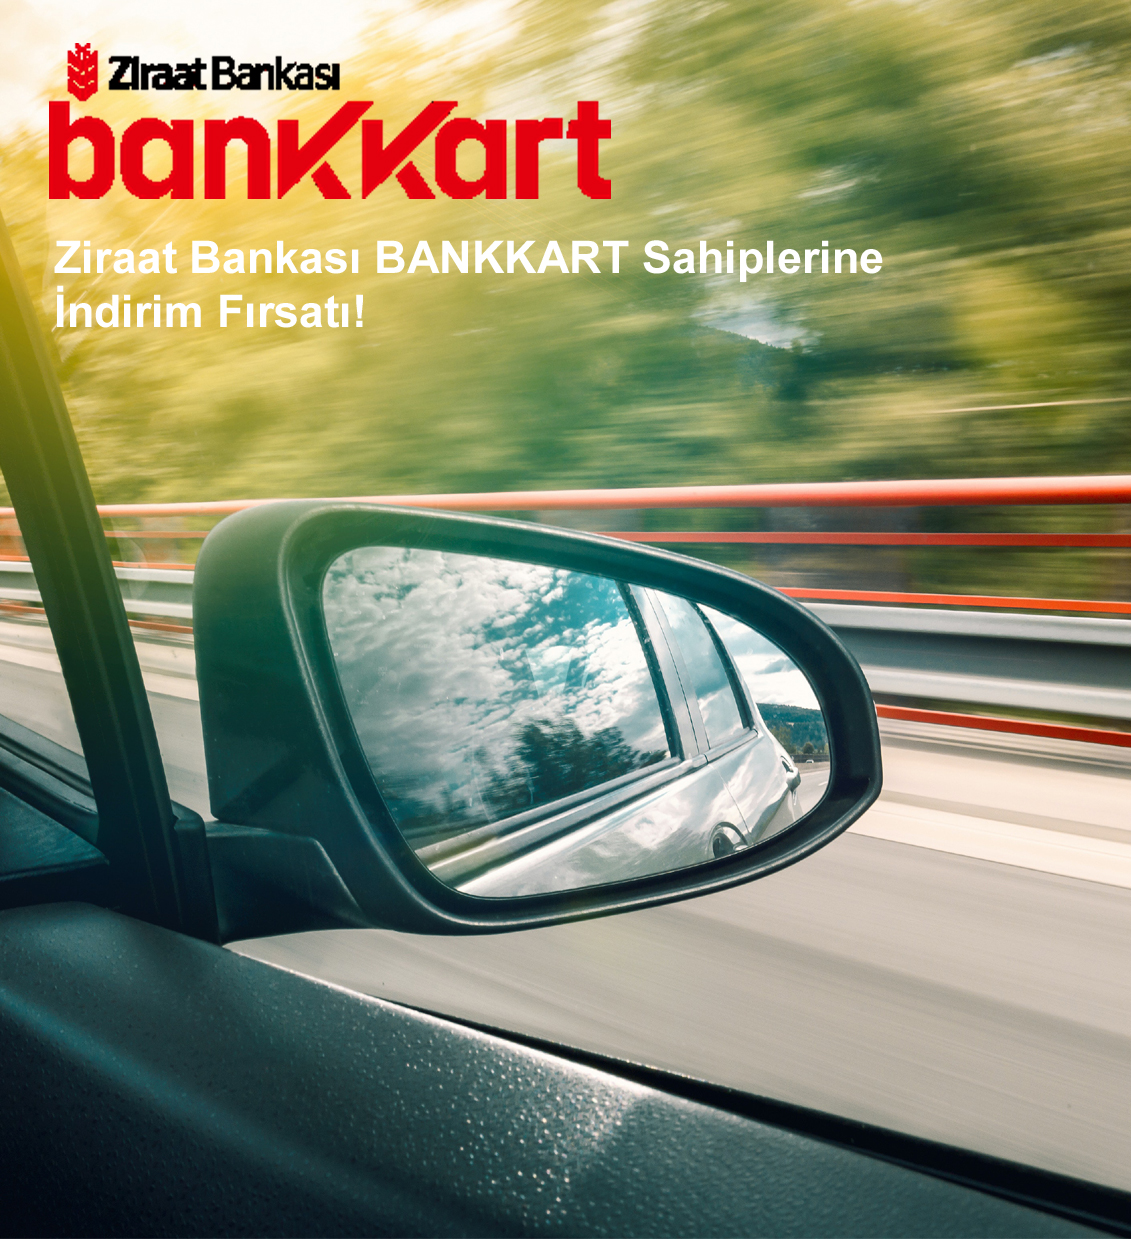 Rabattmöglichkeit für Ziraat Bank BANKKART-Inhaber!